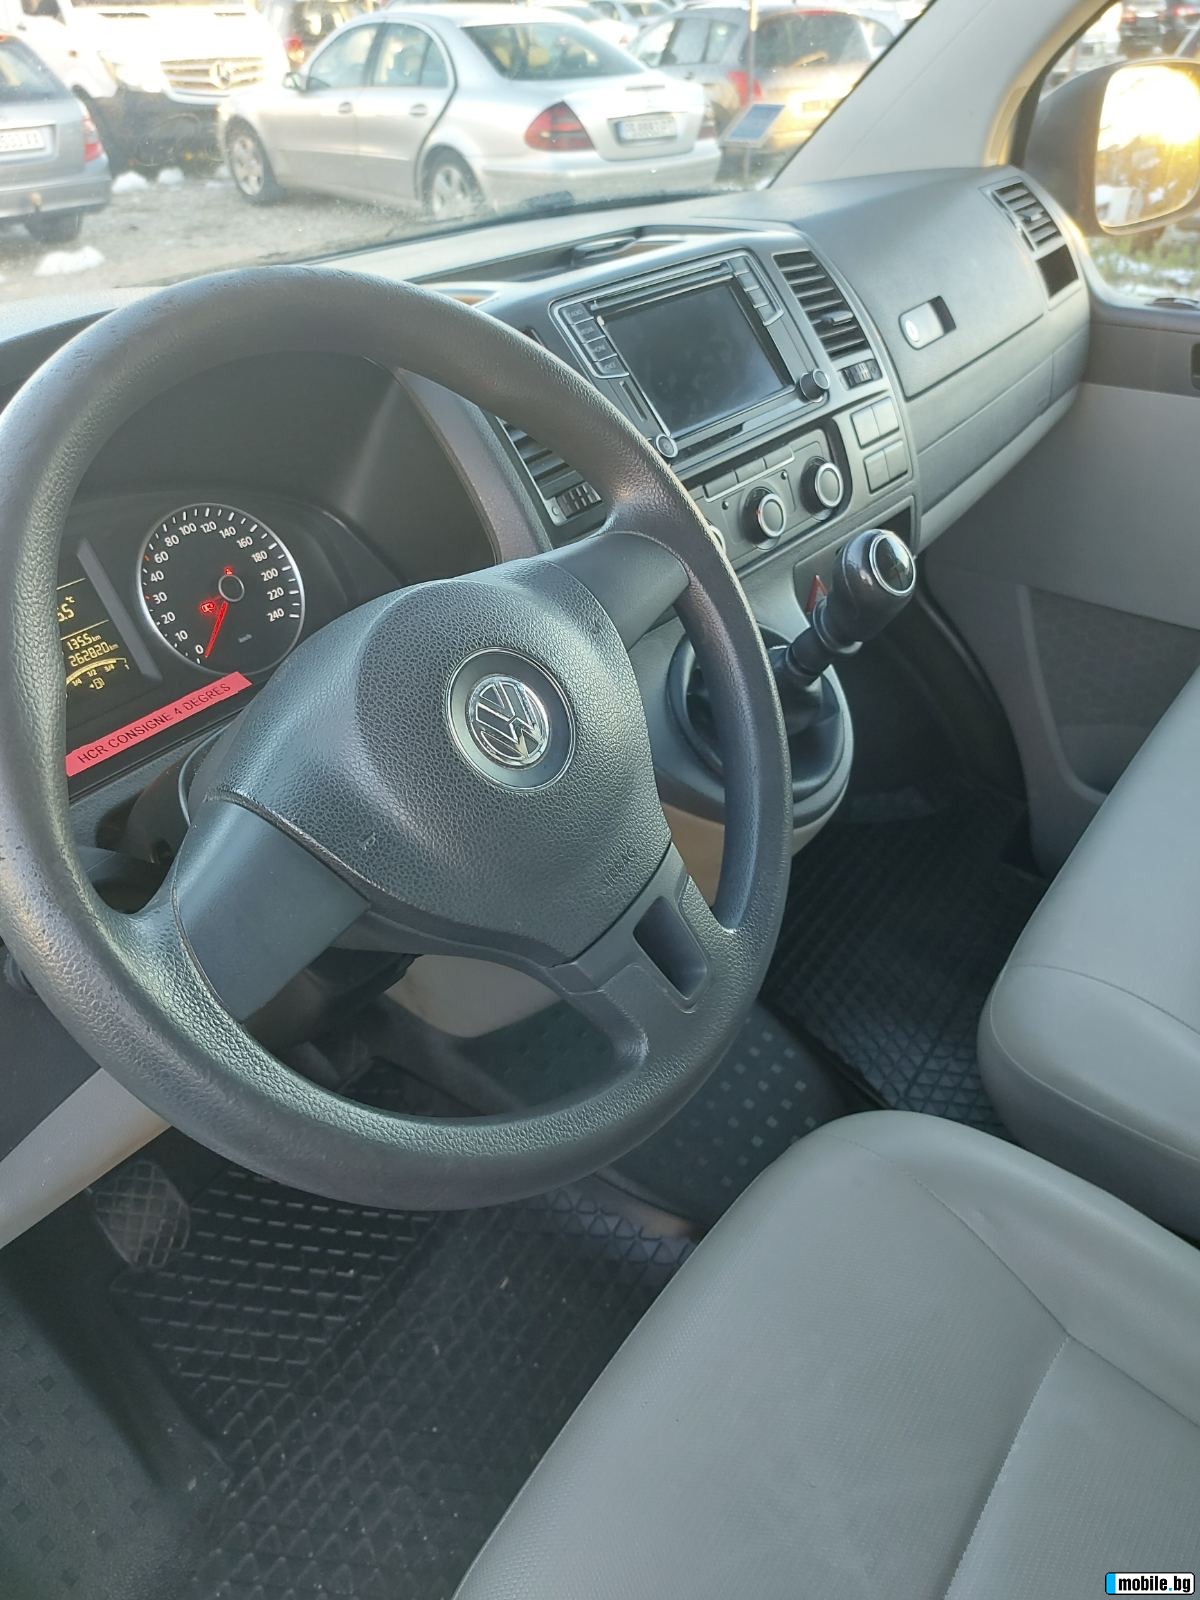 VW Transporter 4x4, + * *  | Mobile.bg   11